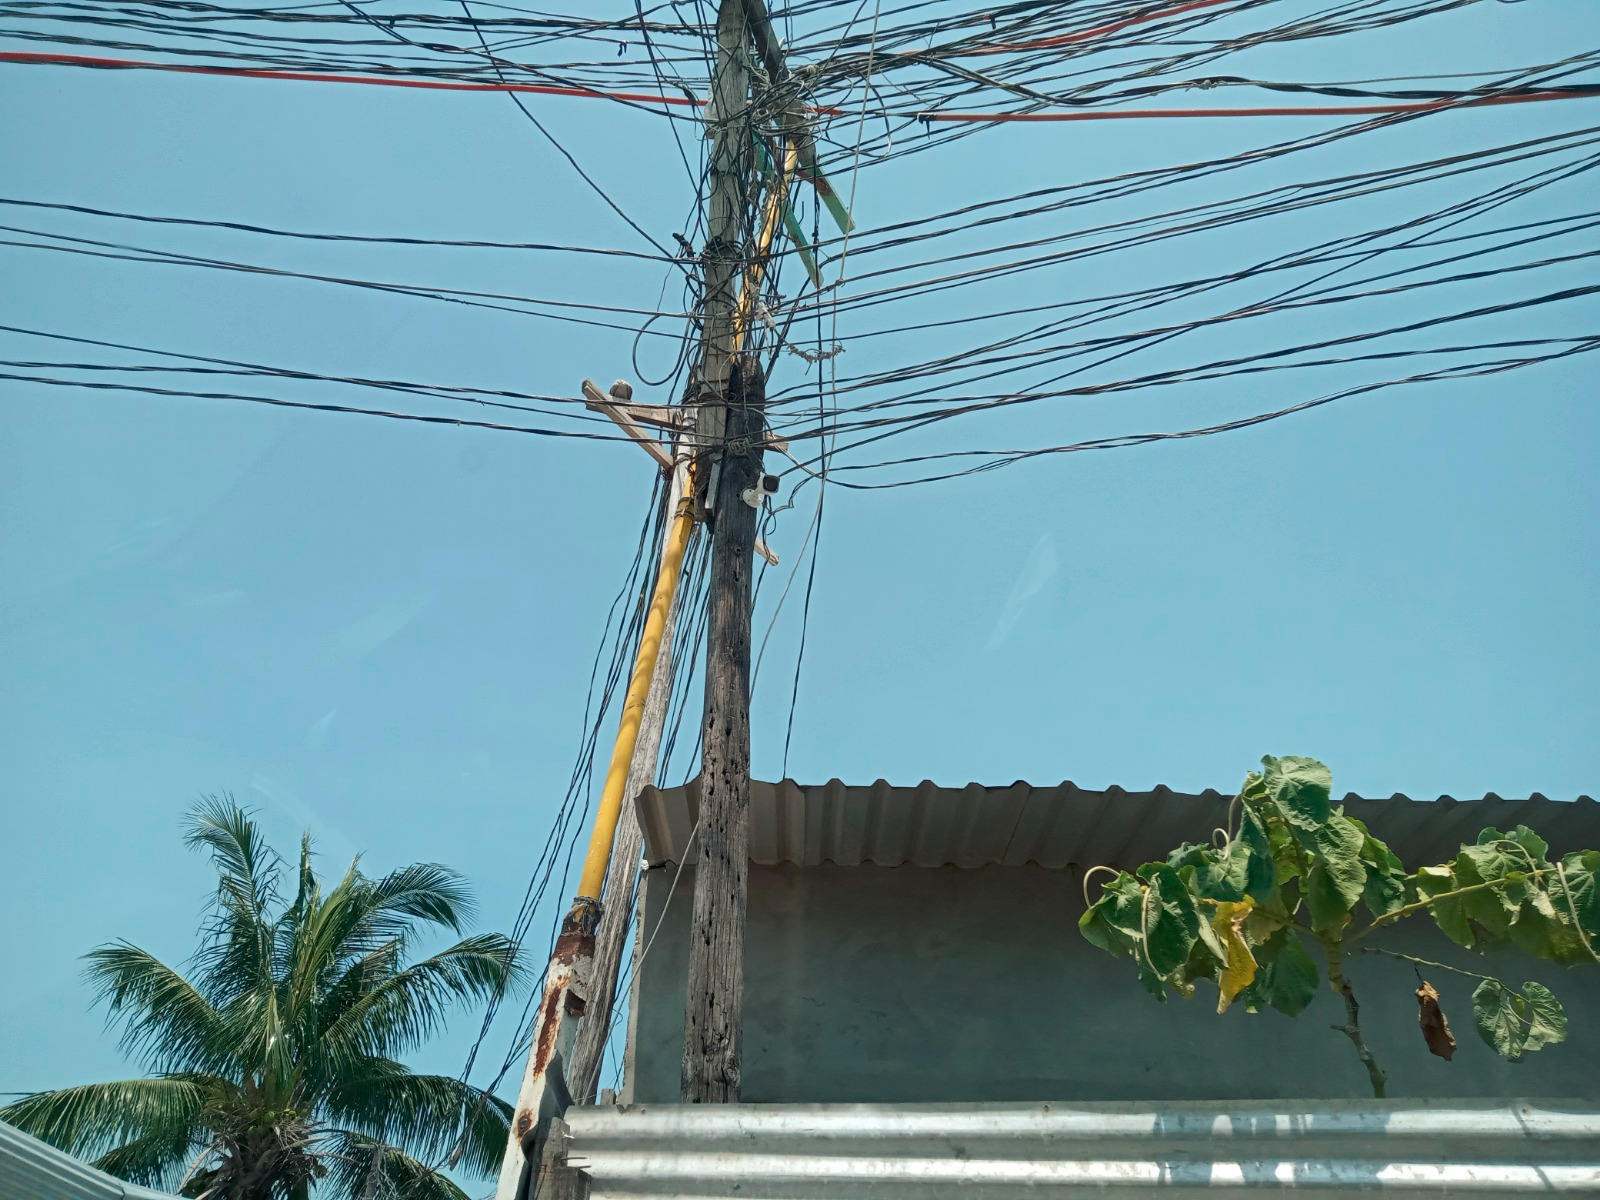 CFE) registró una pérdida de 77 millones 792 mil 160.49 pesos, en el estado de Campeche, por robo de energía o conexiones indebidas